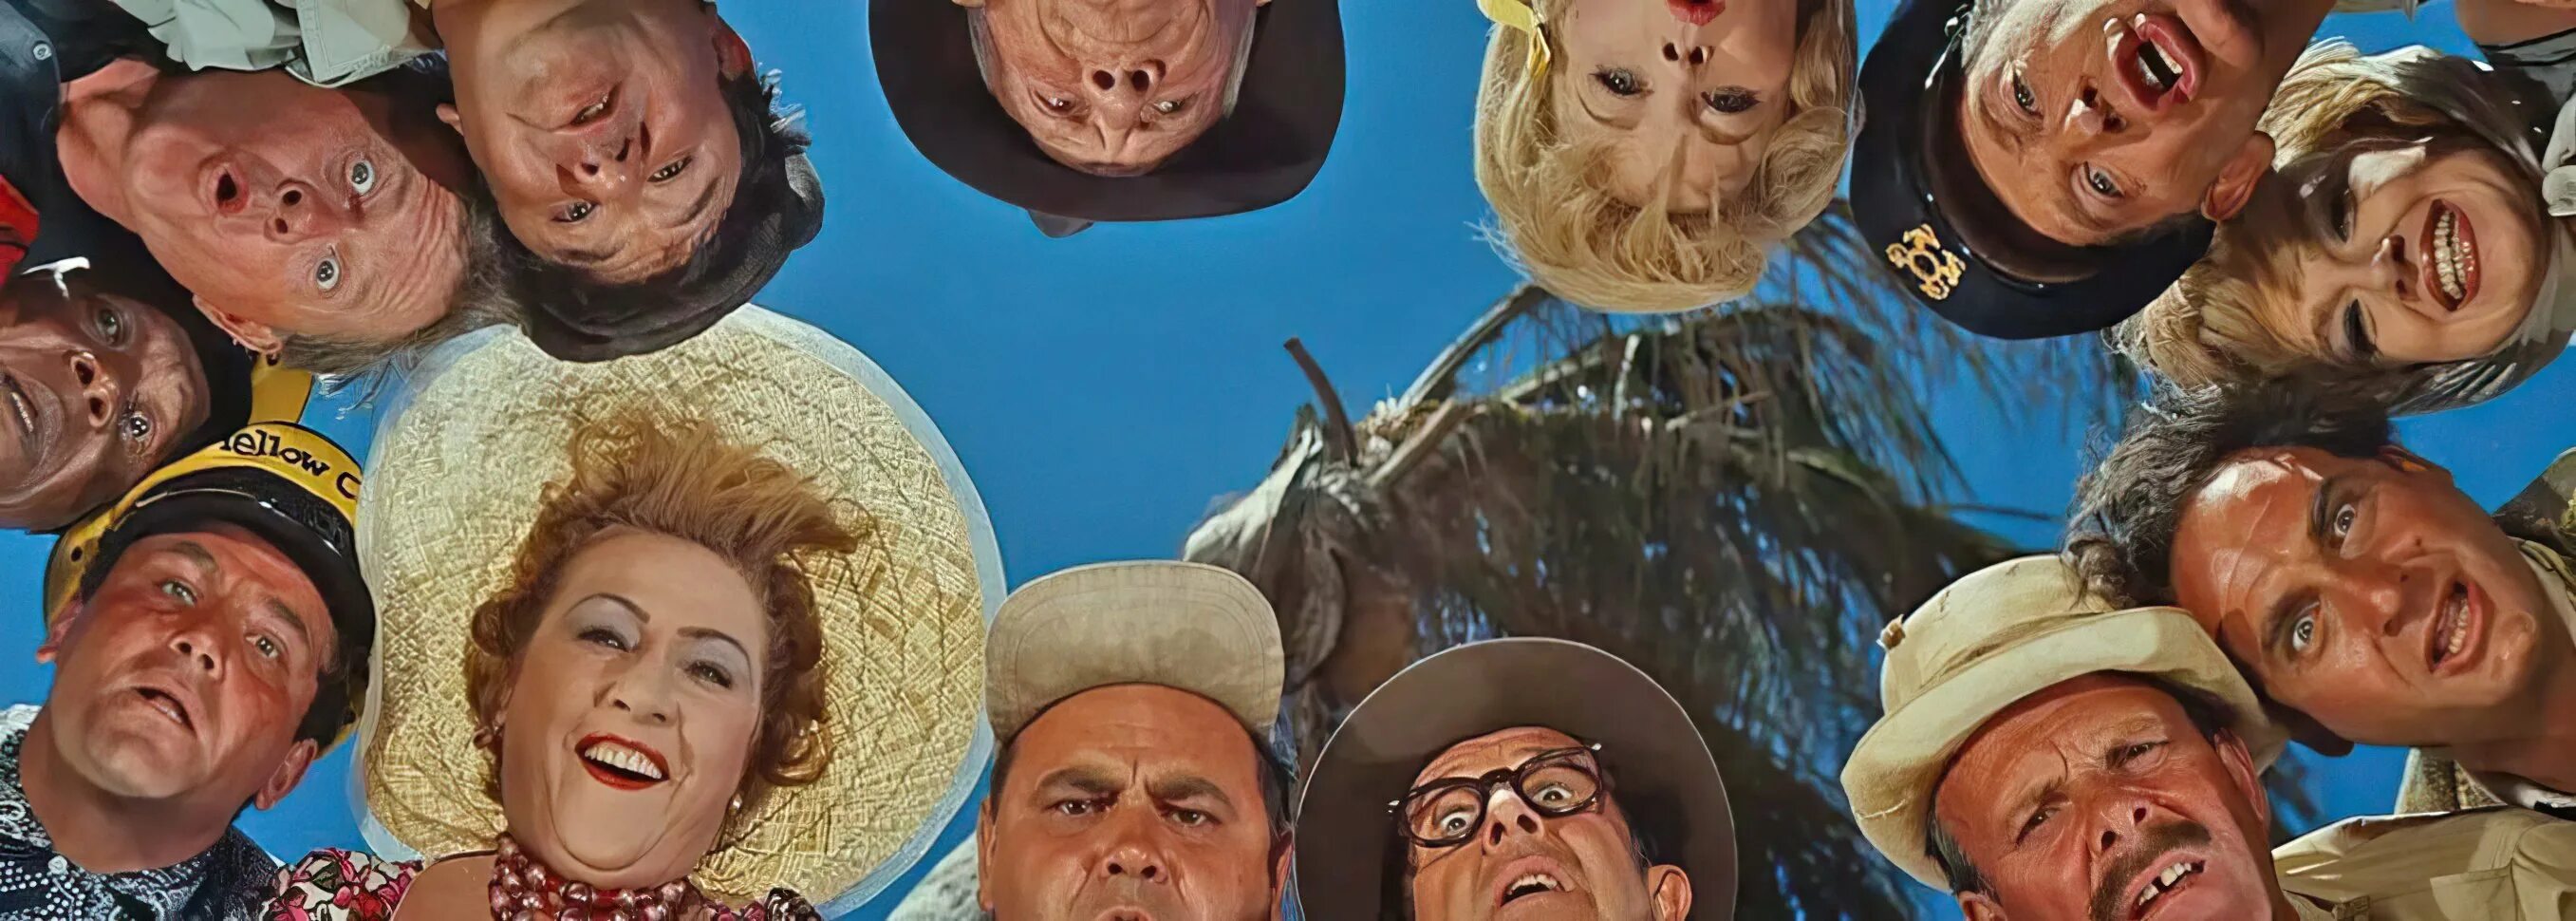 «Этот Безумный, Безумный, Безумный, Безумный мир», Стэнли Крамер, 1963. Этот Безумный Безумный Безумный Безумный мир 1963 танцы. Они удивили мир